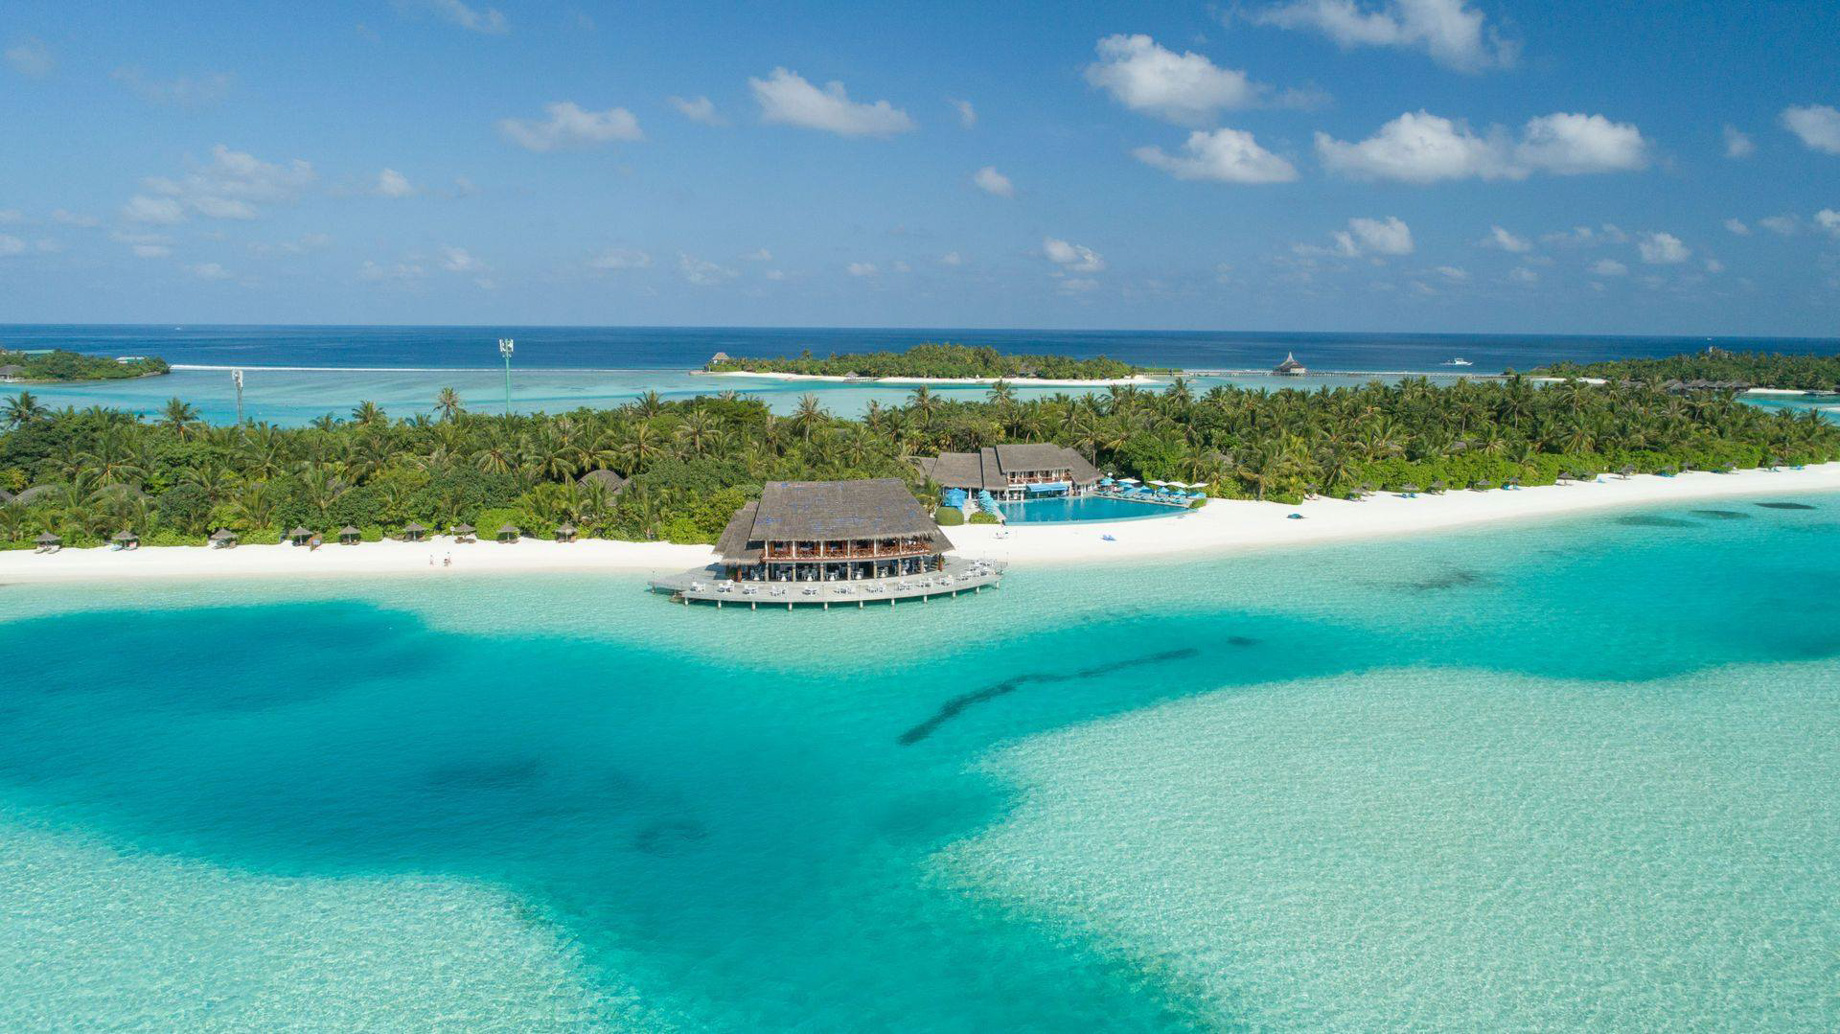 Anantara Thigu Maldives Resort - South Male Atoll, Maldives - Resort Aerial View